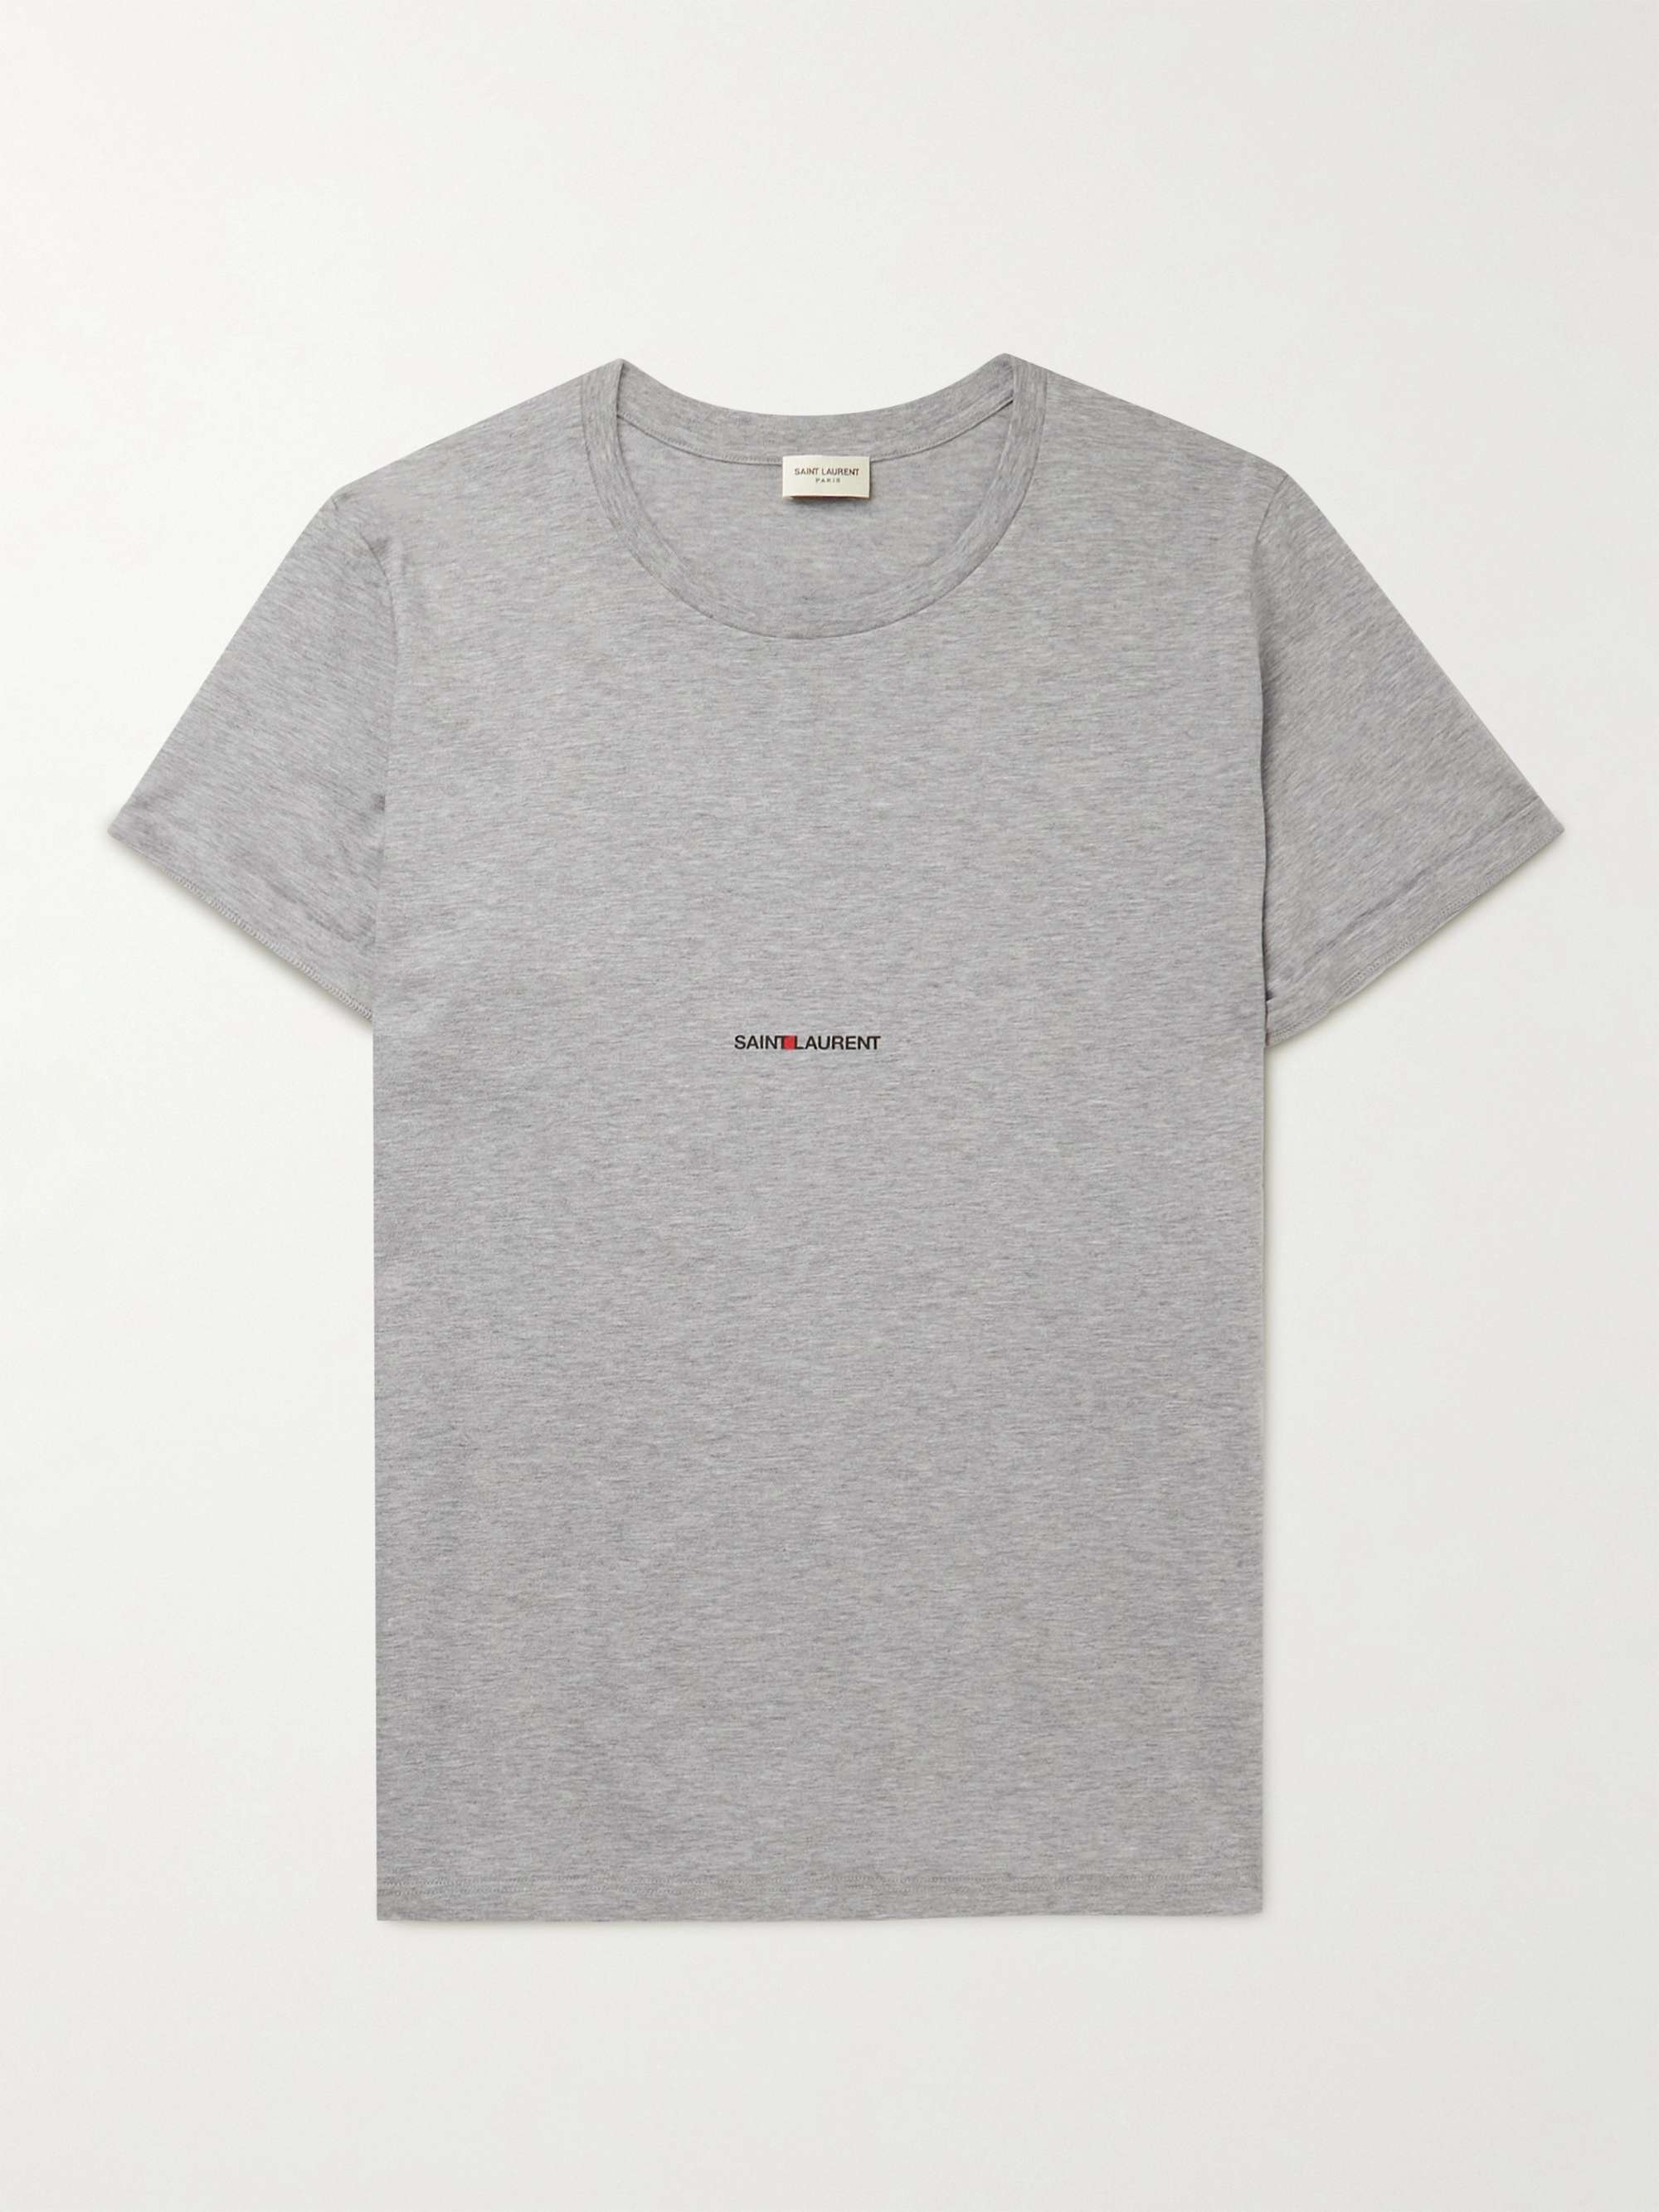 SAINT LAURENT Slim-Fit Logo-Print Cotton-Jersey T-Shirt | MR PORTER